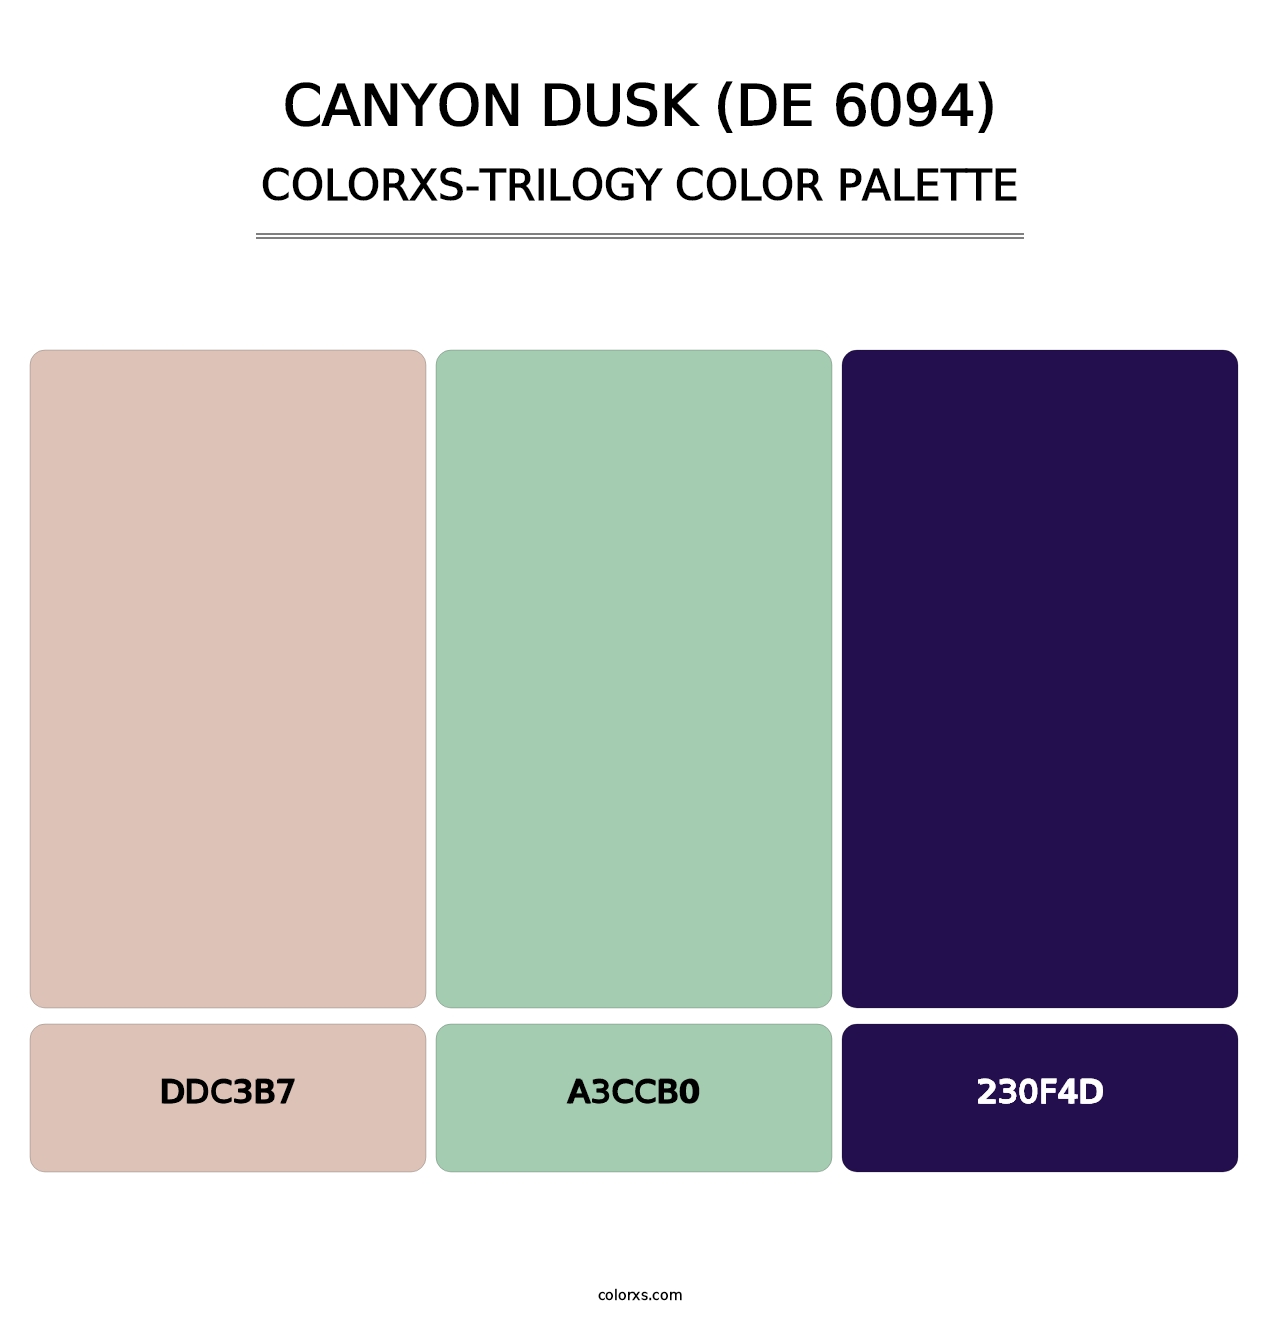 Canyon Dusk (DE 6094) - Colorxs Trilogy Palette